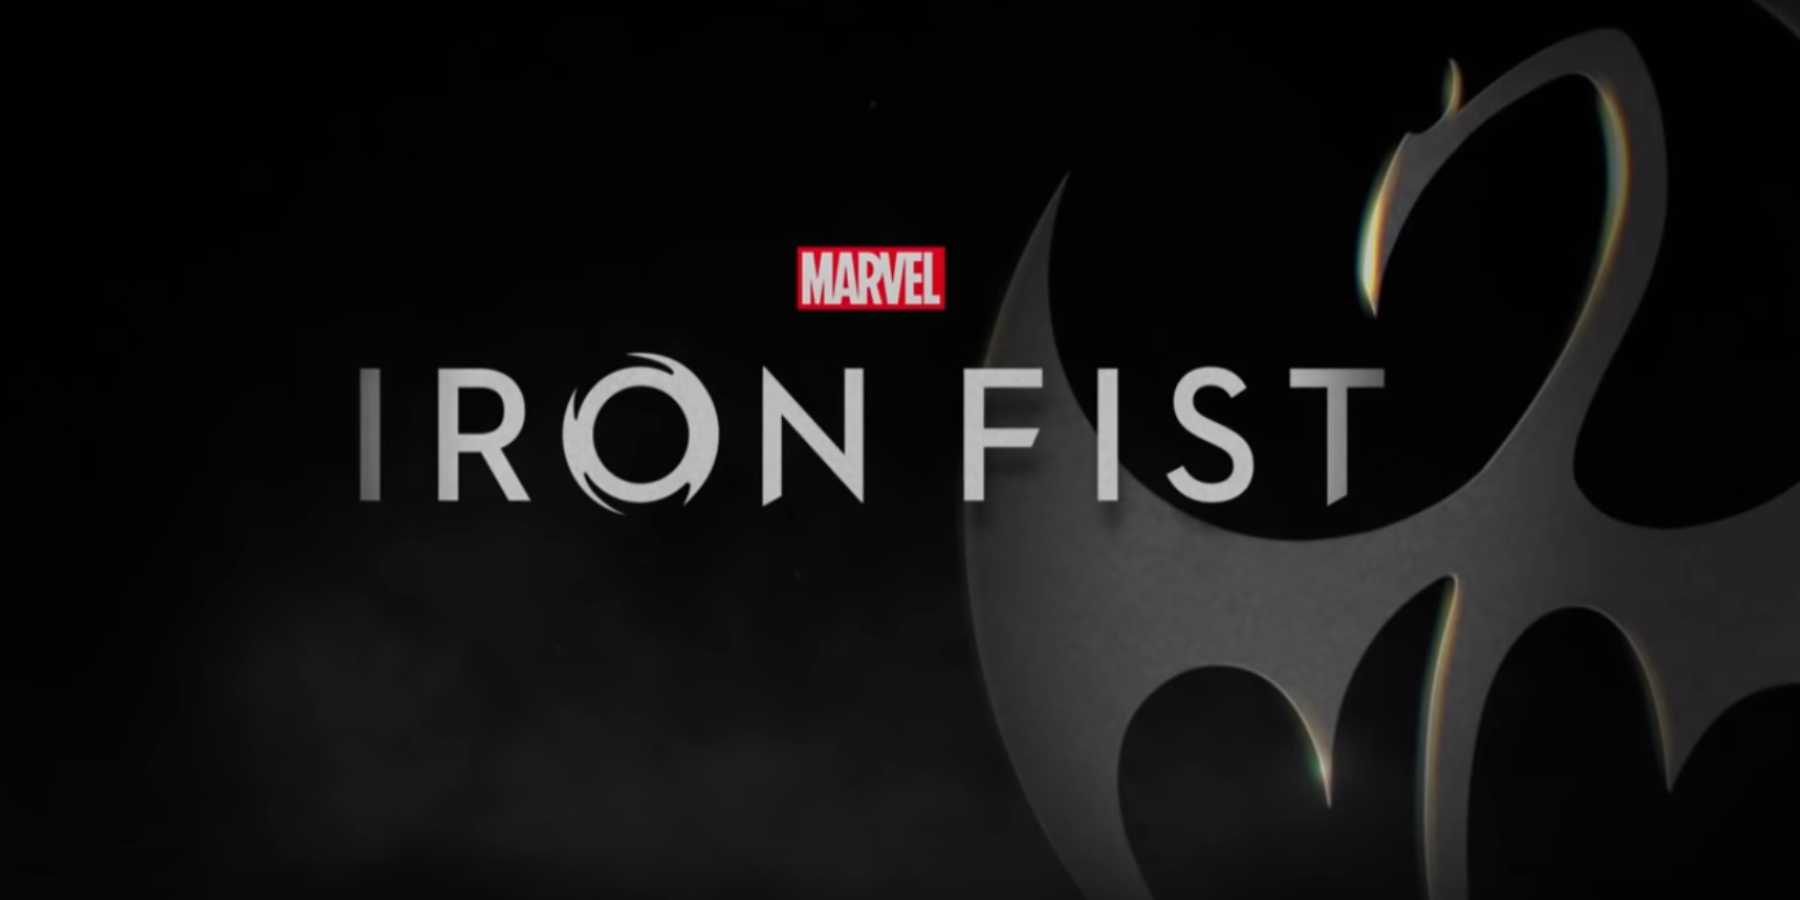 Marvel Iron Fist regresa a Netflix el 7 de Setiembre